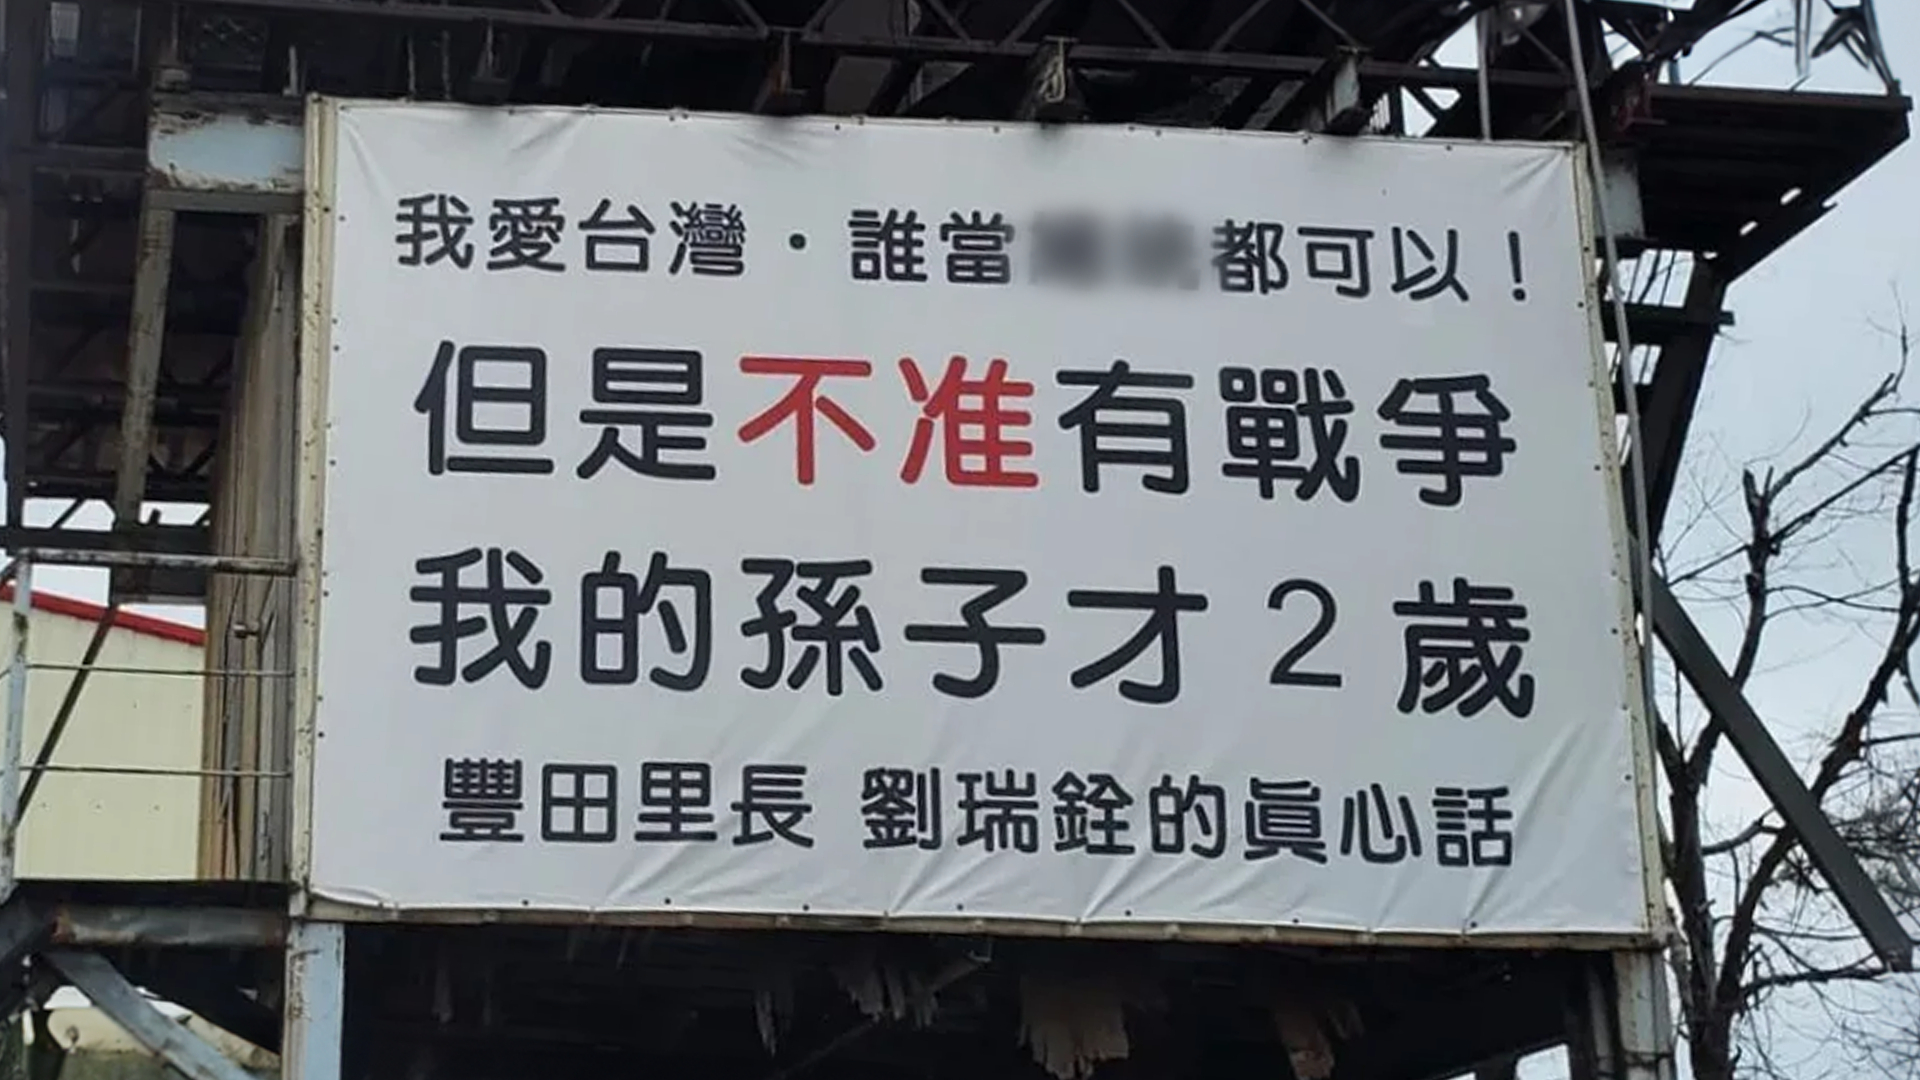 台中市一广告牌高呼“不准有战争”，到年底类似标语会遍地开花？